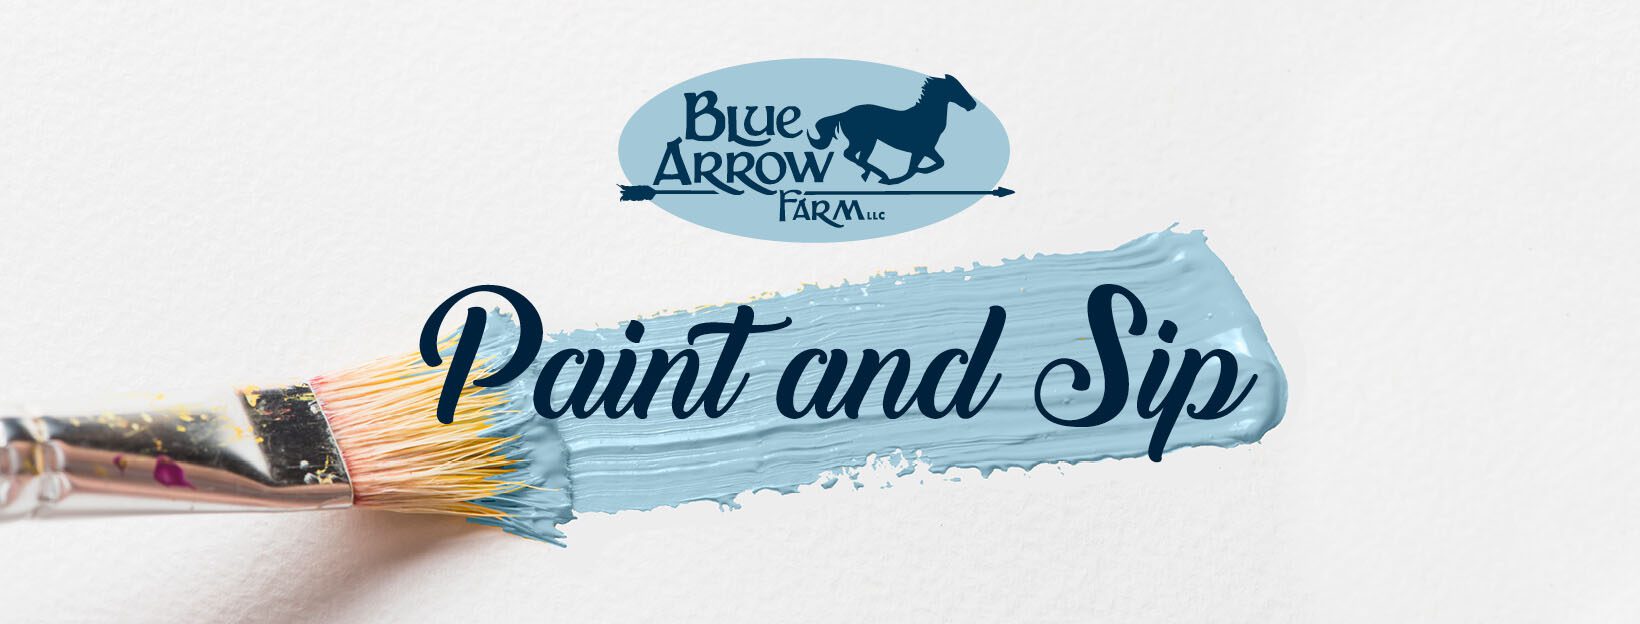 Paint and Sip @ Blue Arrow Farm